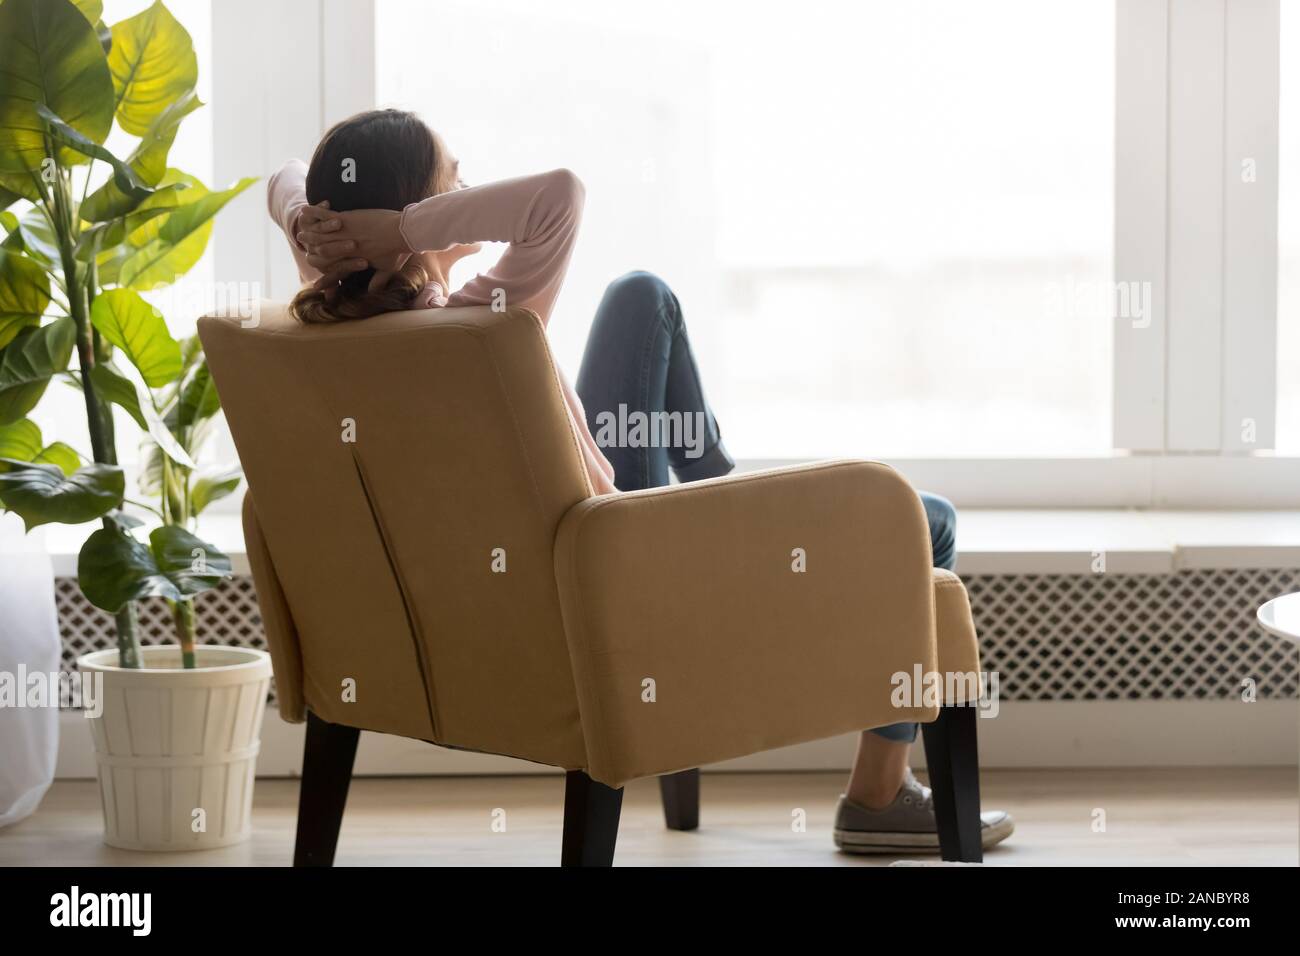 Junge Frau in einem bequemen Sessel zurück ruht. Stockfoto